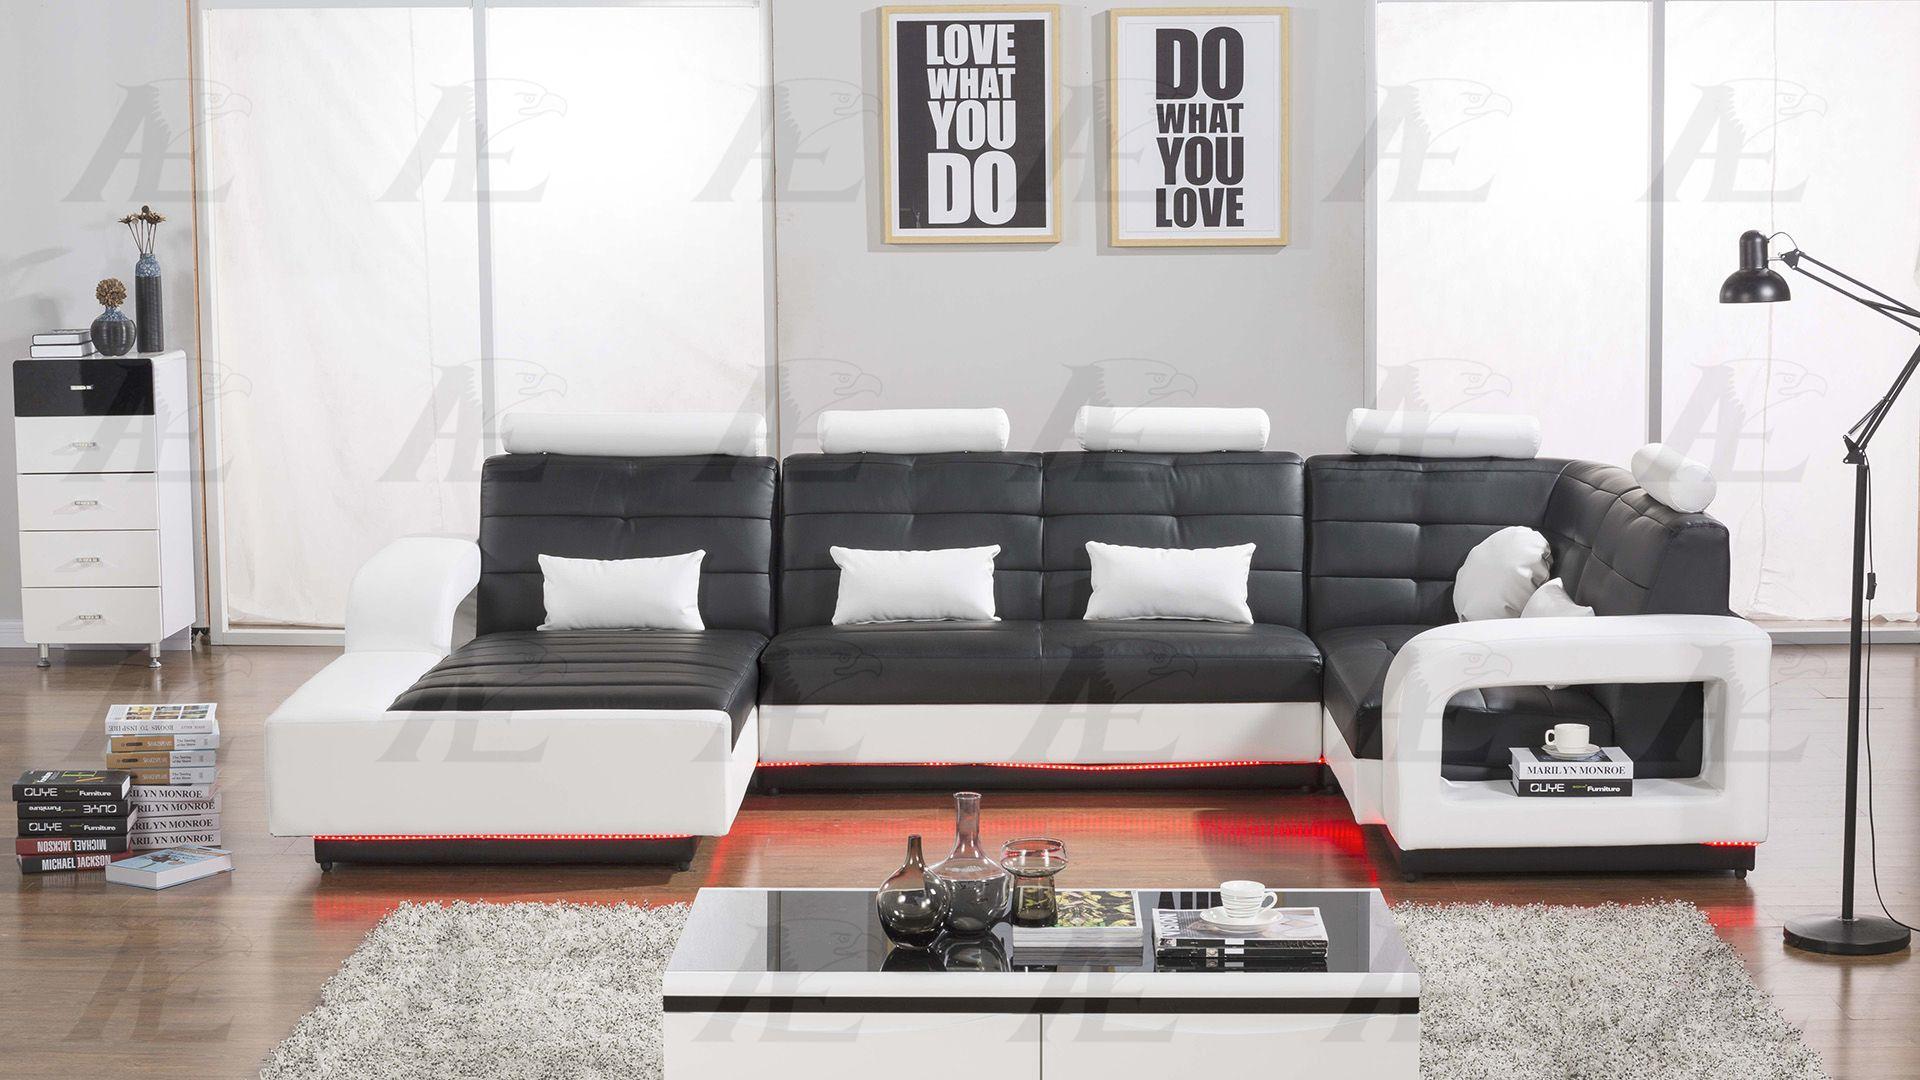 

    
American Eagle Furniture AE-LD800-BK.W Sectional Sofa White/Black AE-LD800L-BK.W
